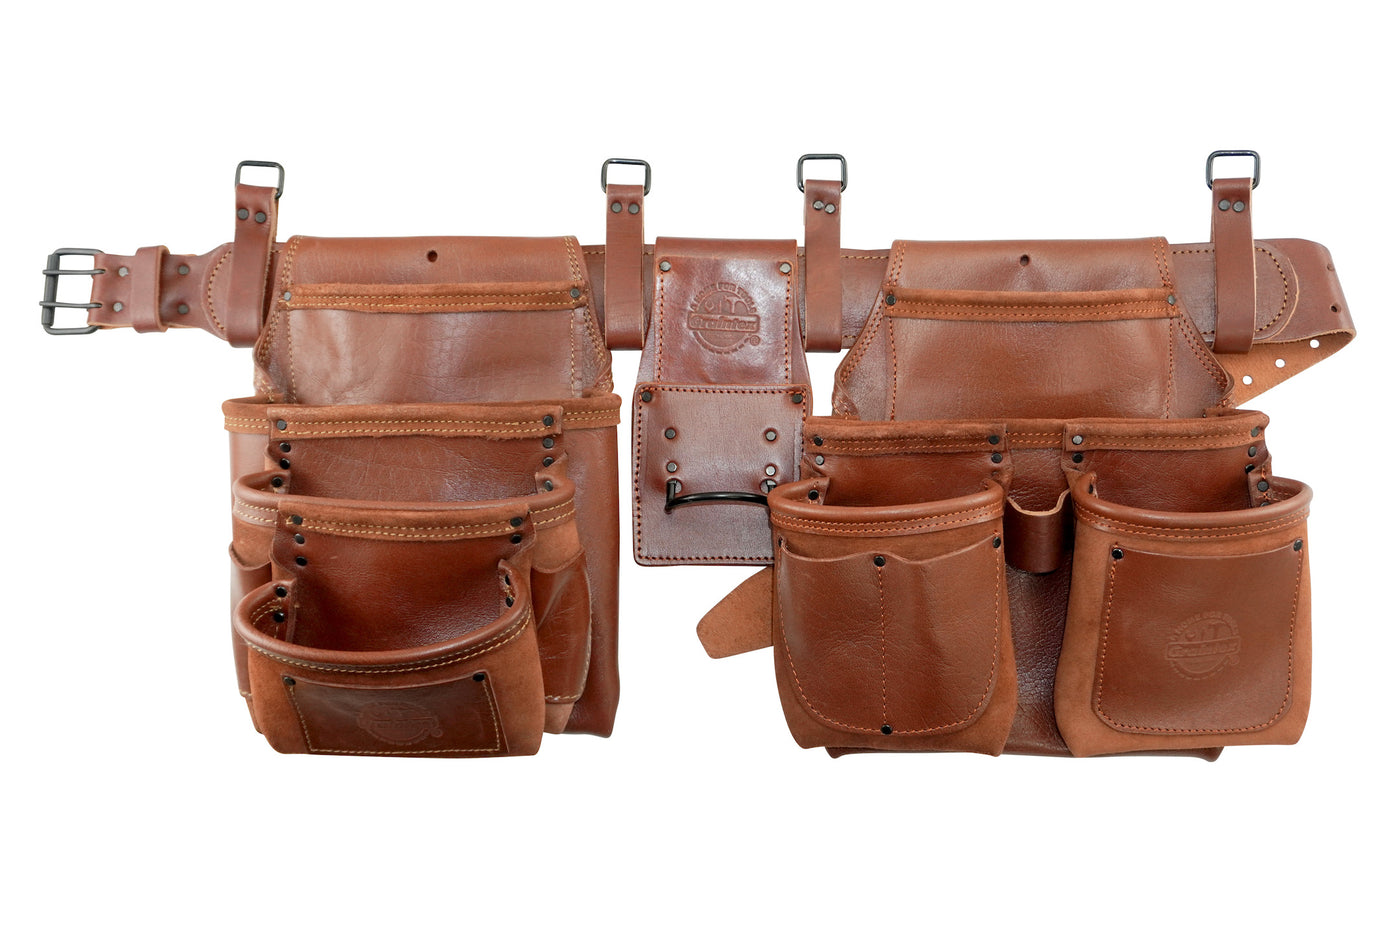 AD2718 :: 4 Piece 15 Pocket Framer's Tool Belt Combo Ambassador Series Chestnut Brown Color Grain Leather